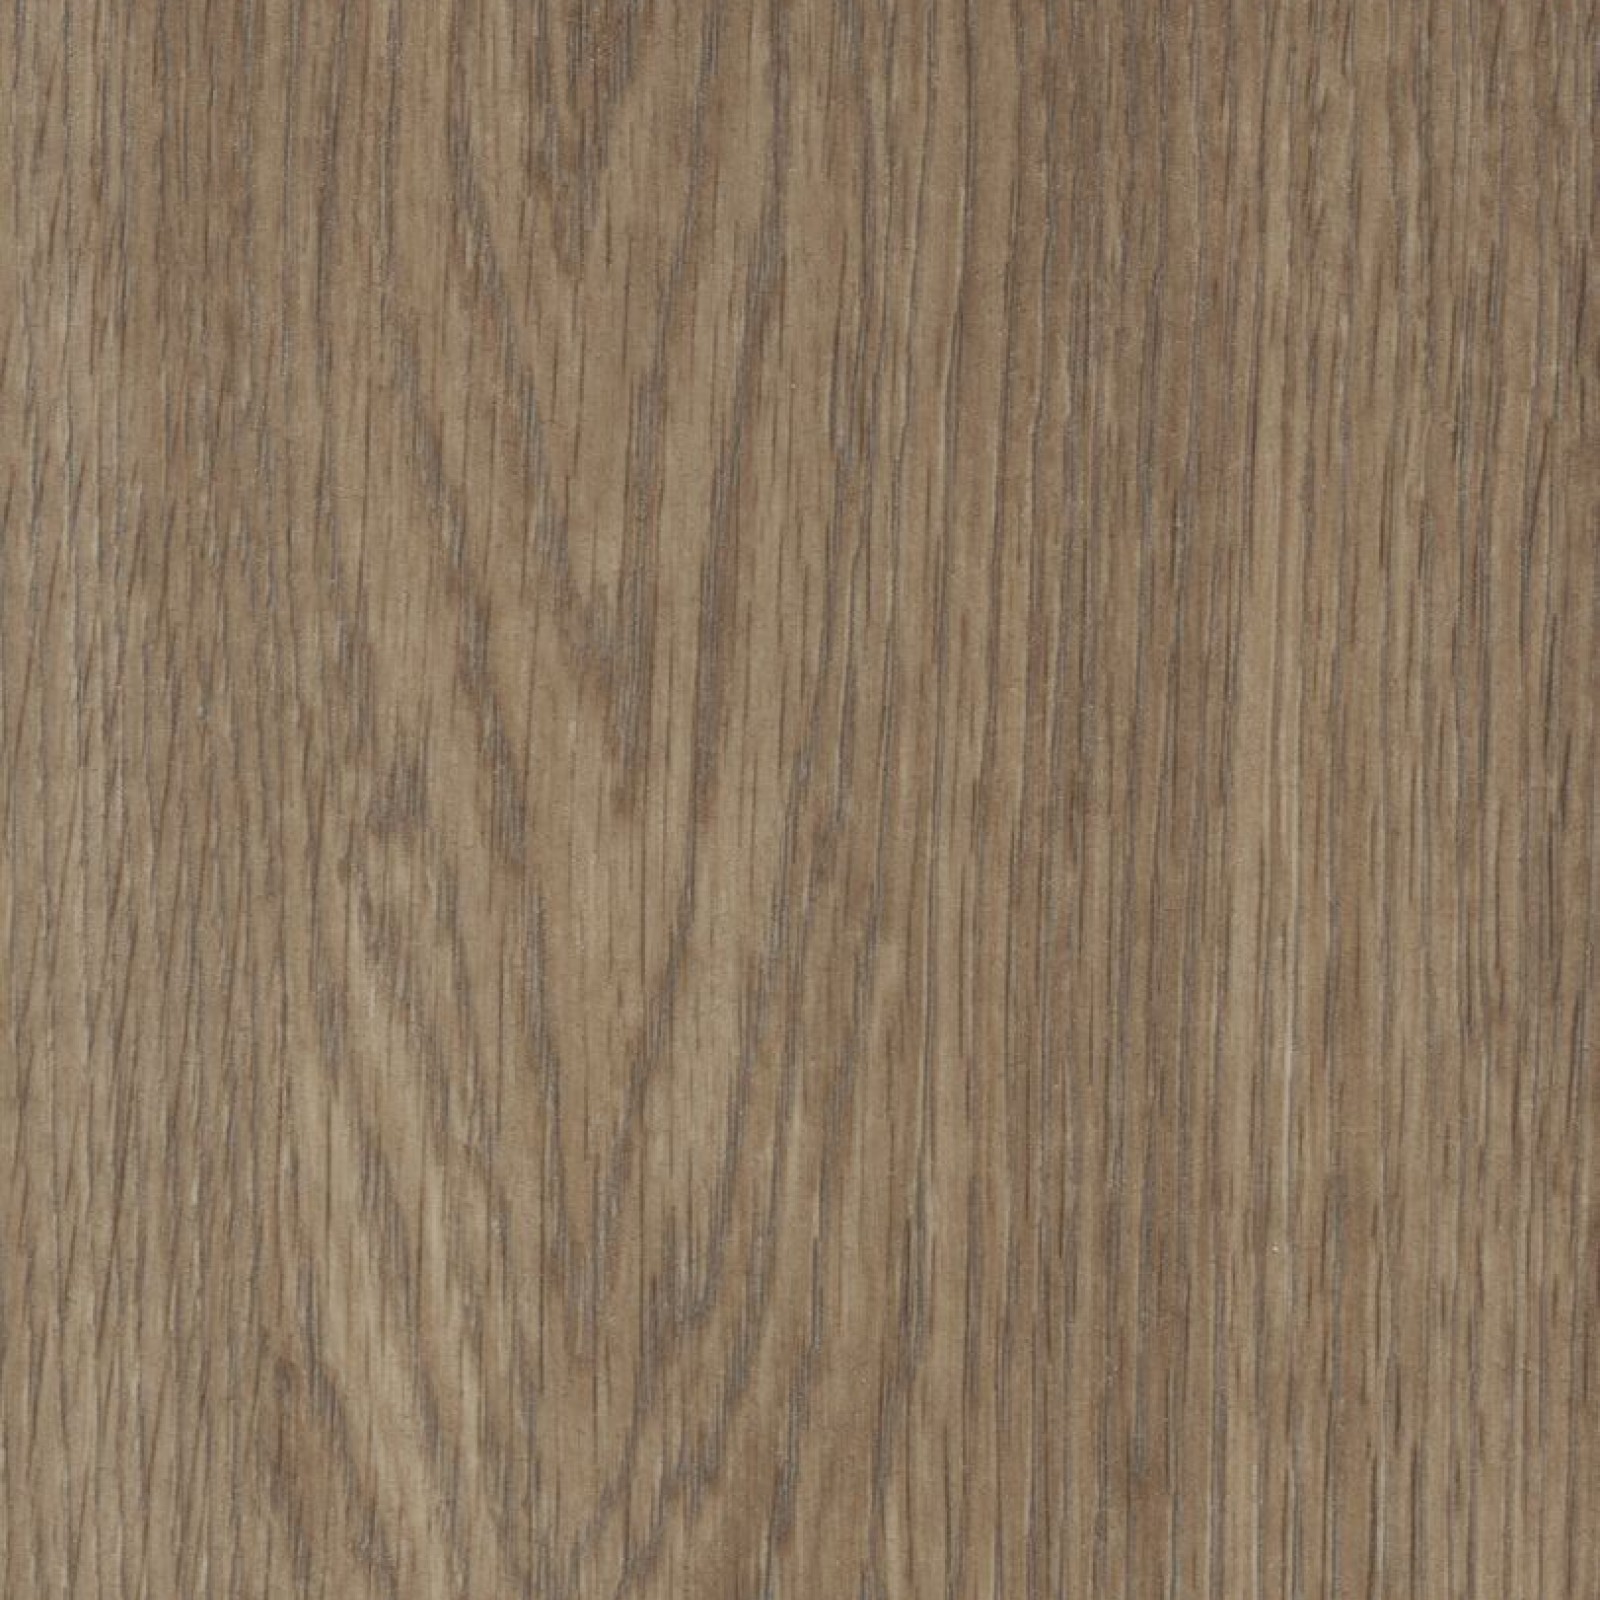 Vzor - 60374CL5 natural collage oak